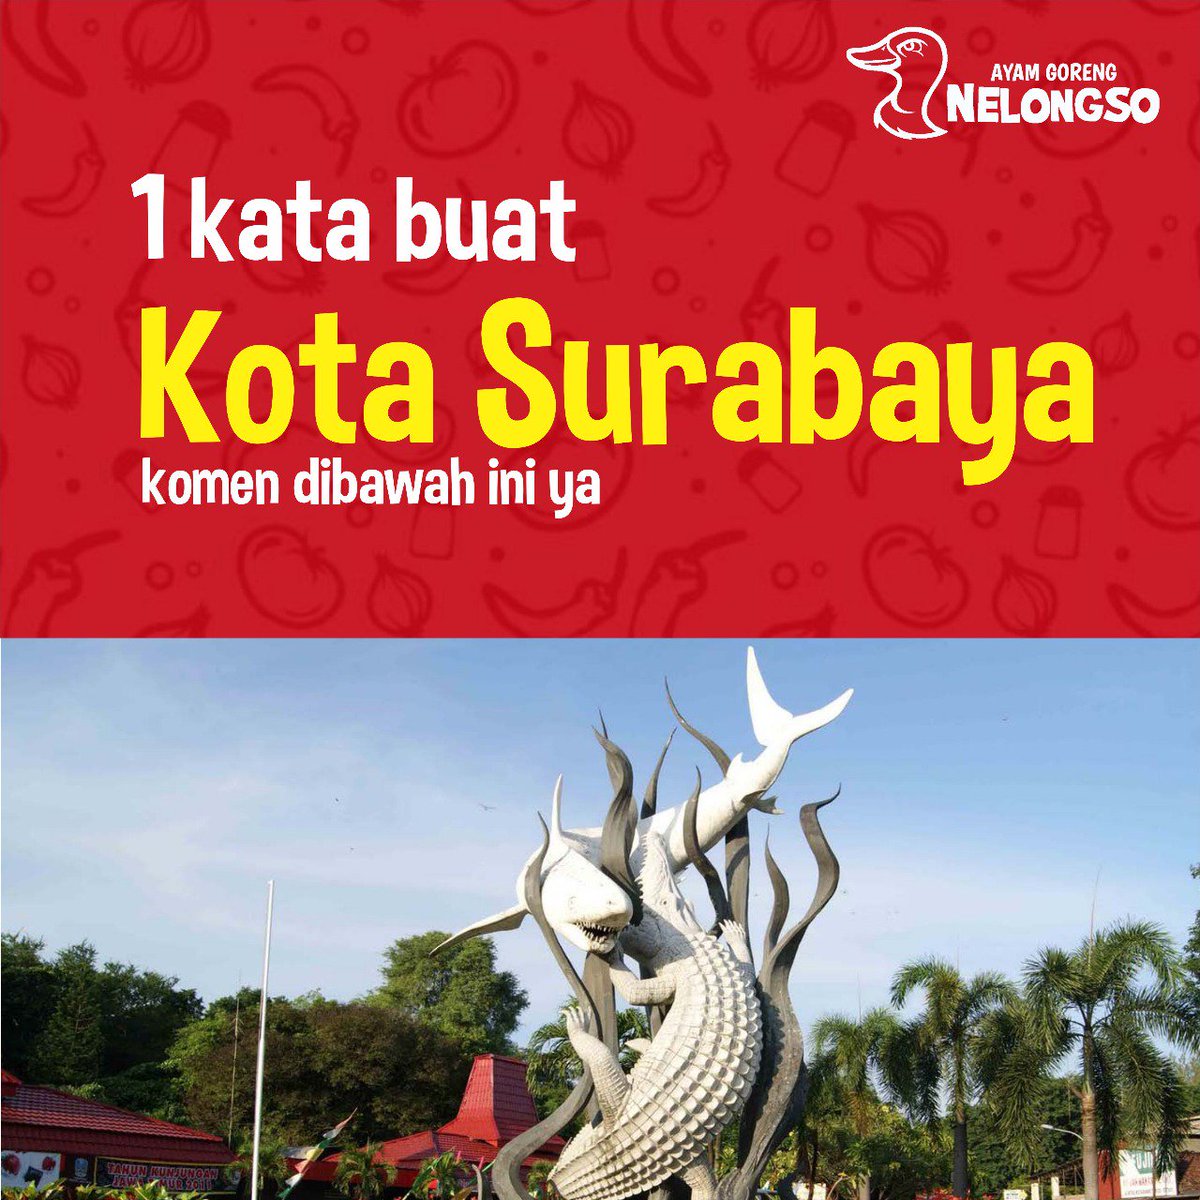 kira - kira 
Apa yang paling cocok untuk Kota Surabaya?

Menurut kamu apa Nelovers? 

#NelongsoPunyaCerita
#MonggoKeNelongso
#NLGS
#SemuaPernahKeNelongso 
#AyamNelongsoSurabaya

#KulinerSurabaya
#SurabayaKuliner
#MahasiswaSurabaya
#SurabayaFoodies
#SurabayaFood
#ExploreSurabaya